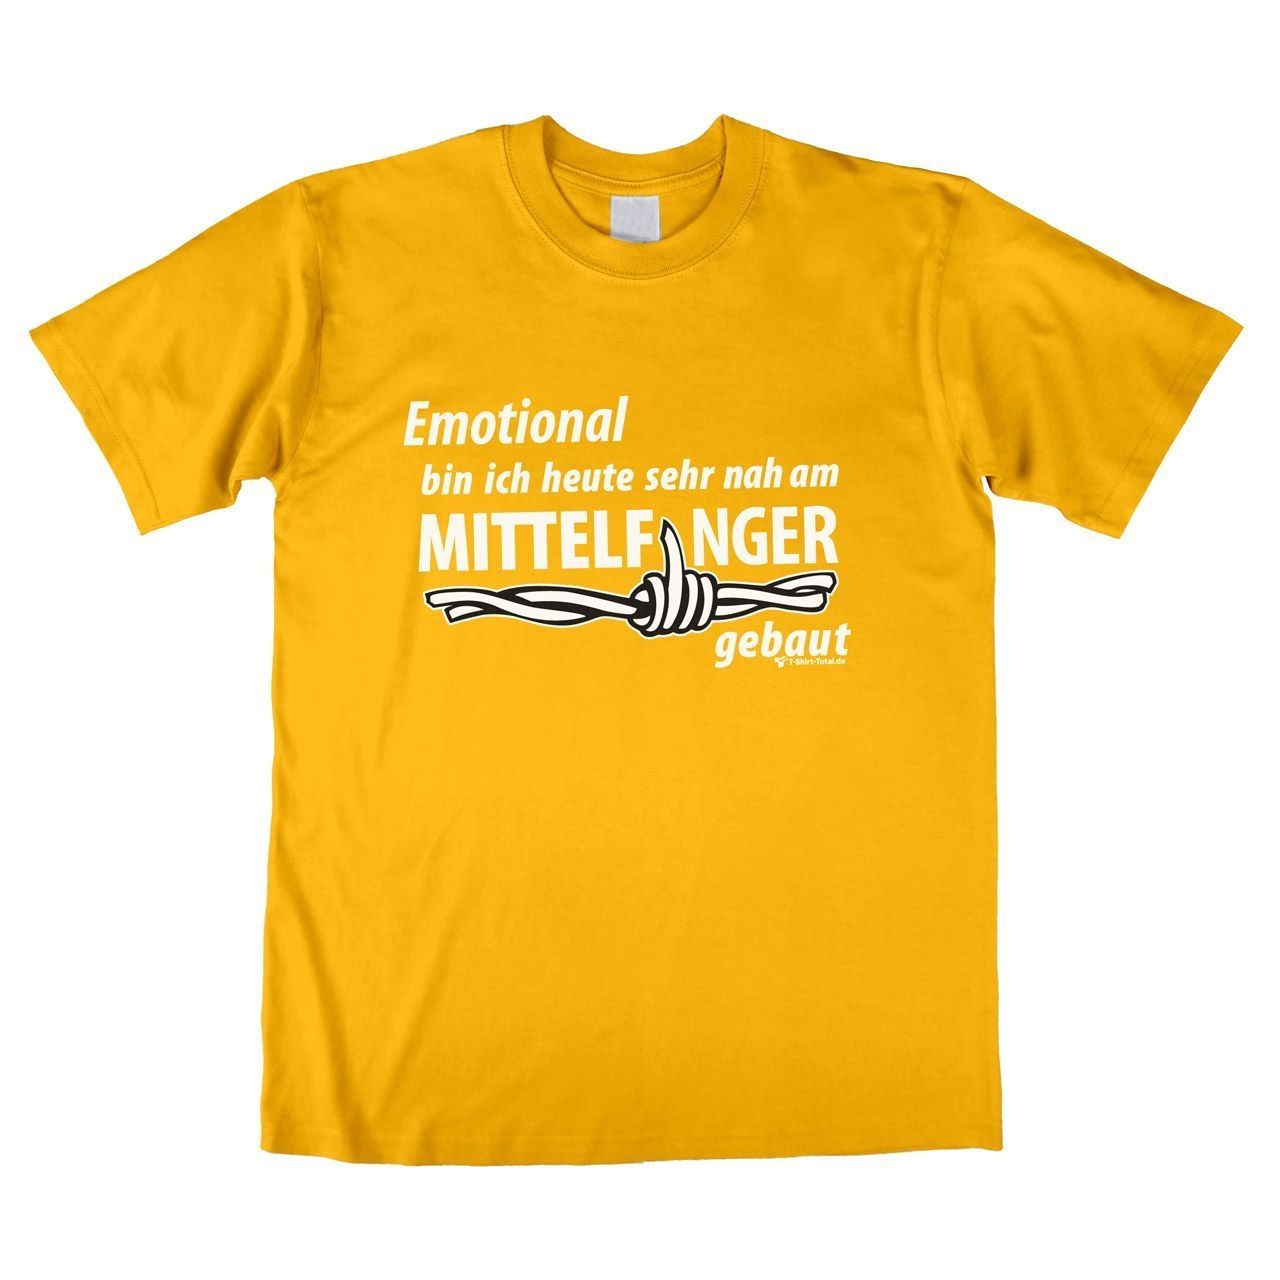 Mittelfinger Unisex T-Shirt gelb Extra Large